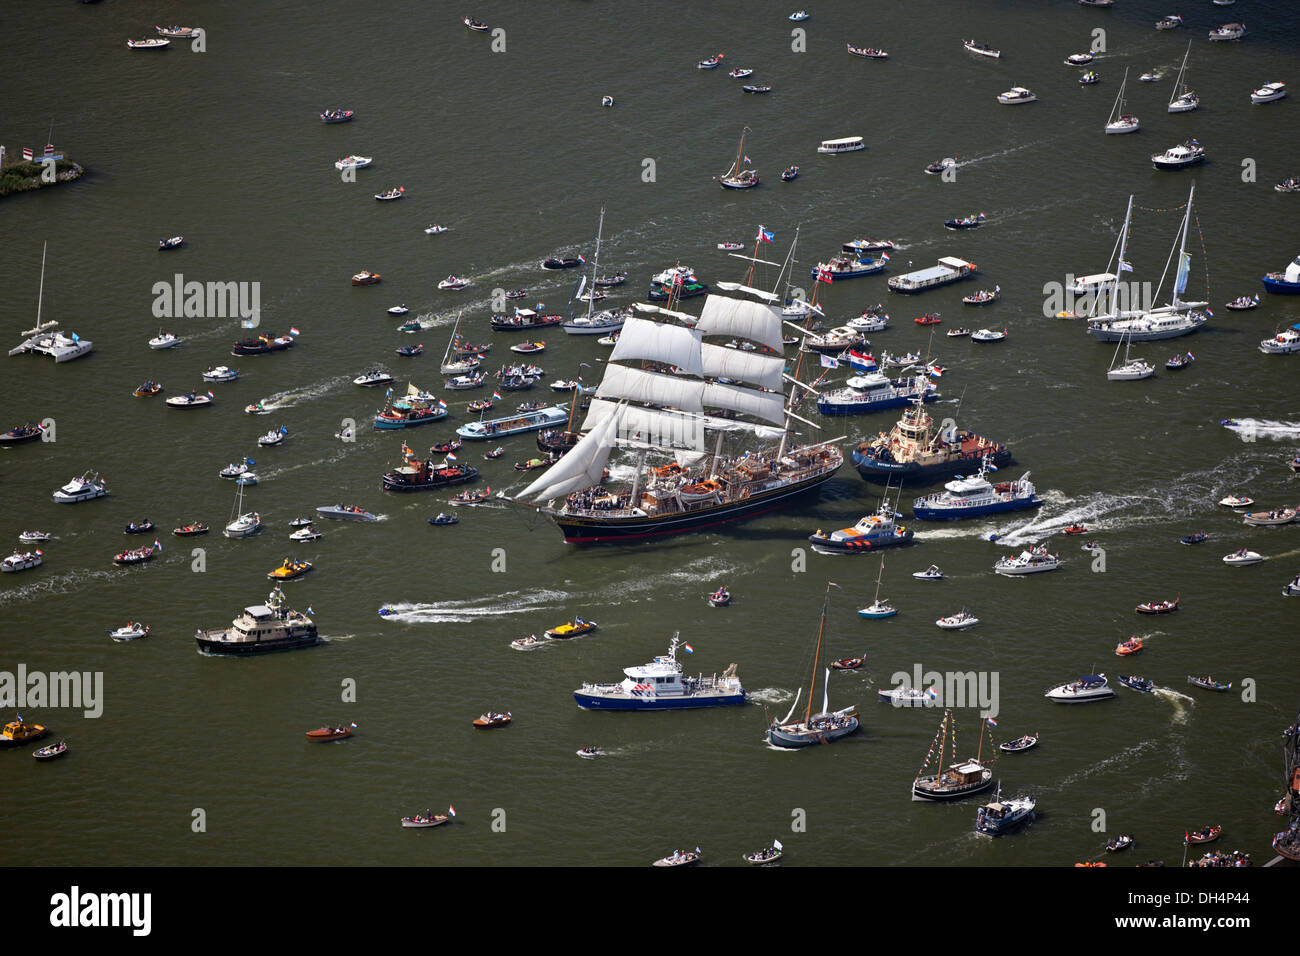 Die Niederlande, Amsterdam, Segeln event Segeln. Antenne der Parade der Großsegler. Großes Segelboot namens Clipper Stad Amsterdam. Noordzeekanaal. Stockfoto